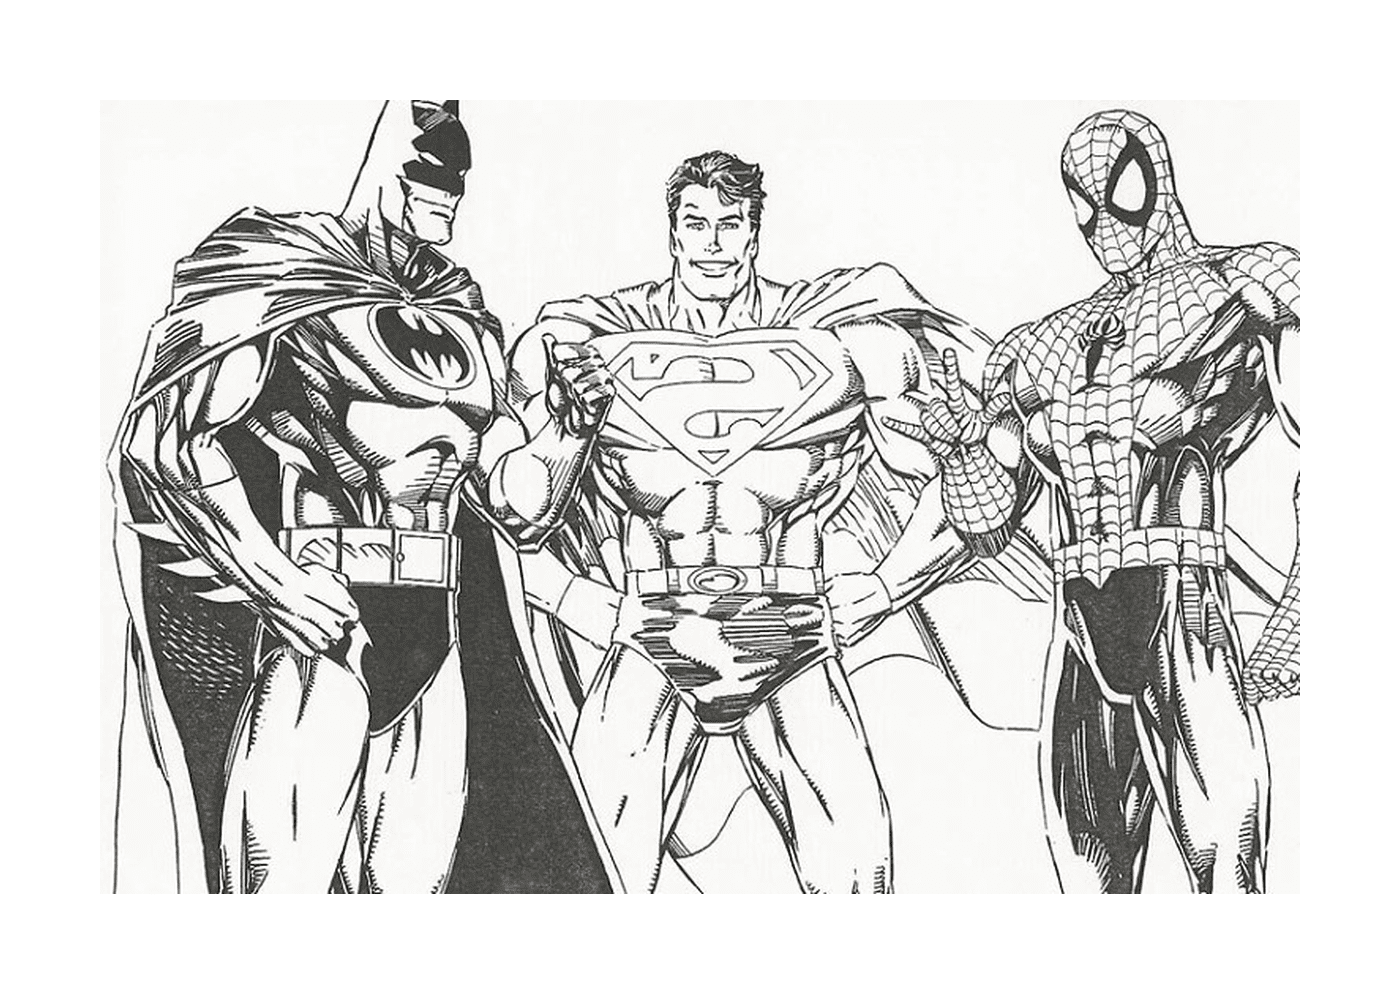  مجموعة من الأبطال الخارقين يقفون جنباً إلى جنب جنباً إلى جنب، بما في ذلك (باتمان) و(سبايدرمان) و(سوبر مان) 